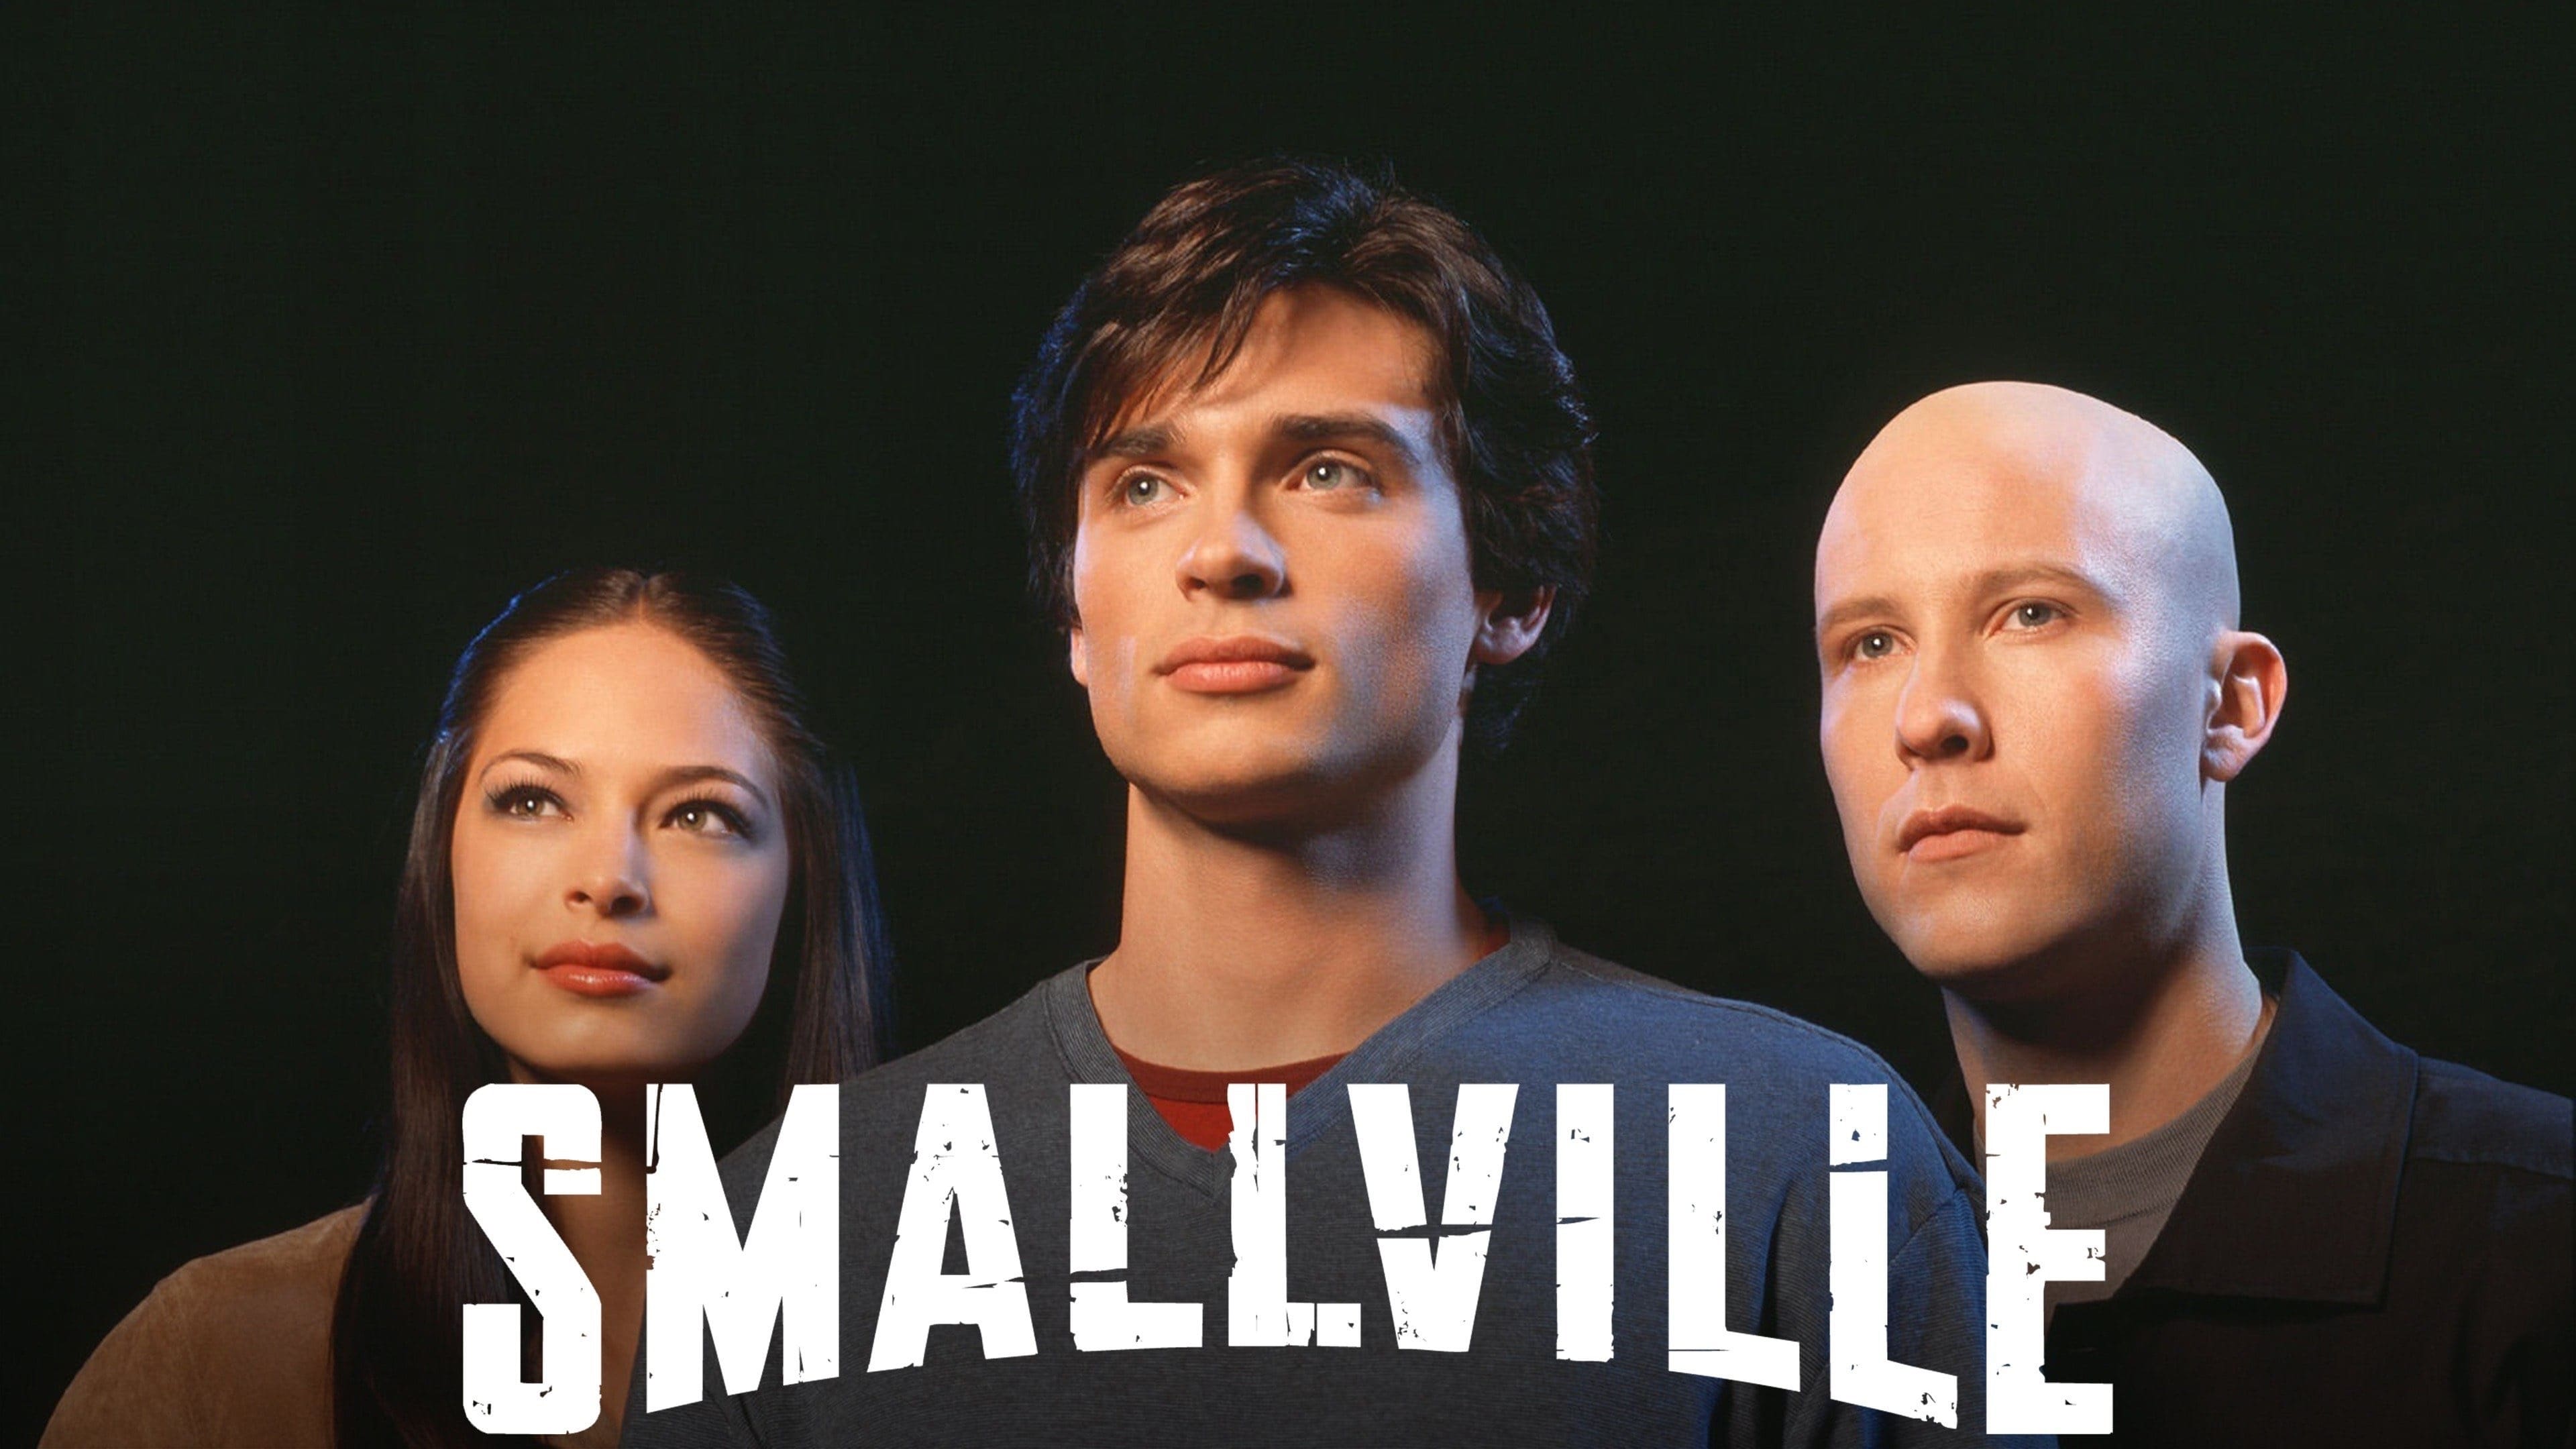 Smallville - Season 10 Episode 17